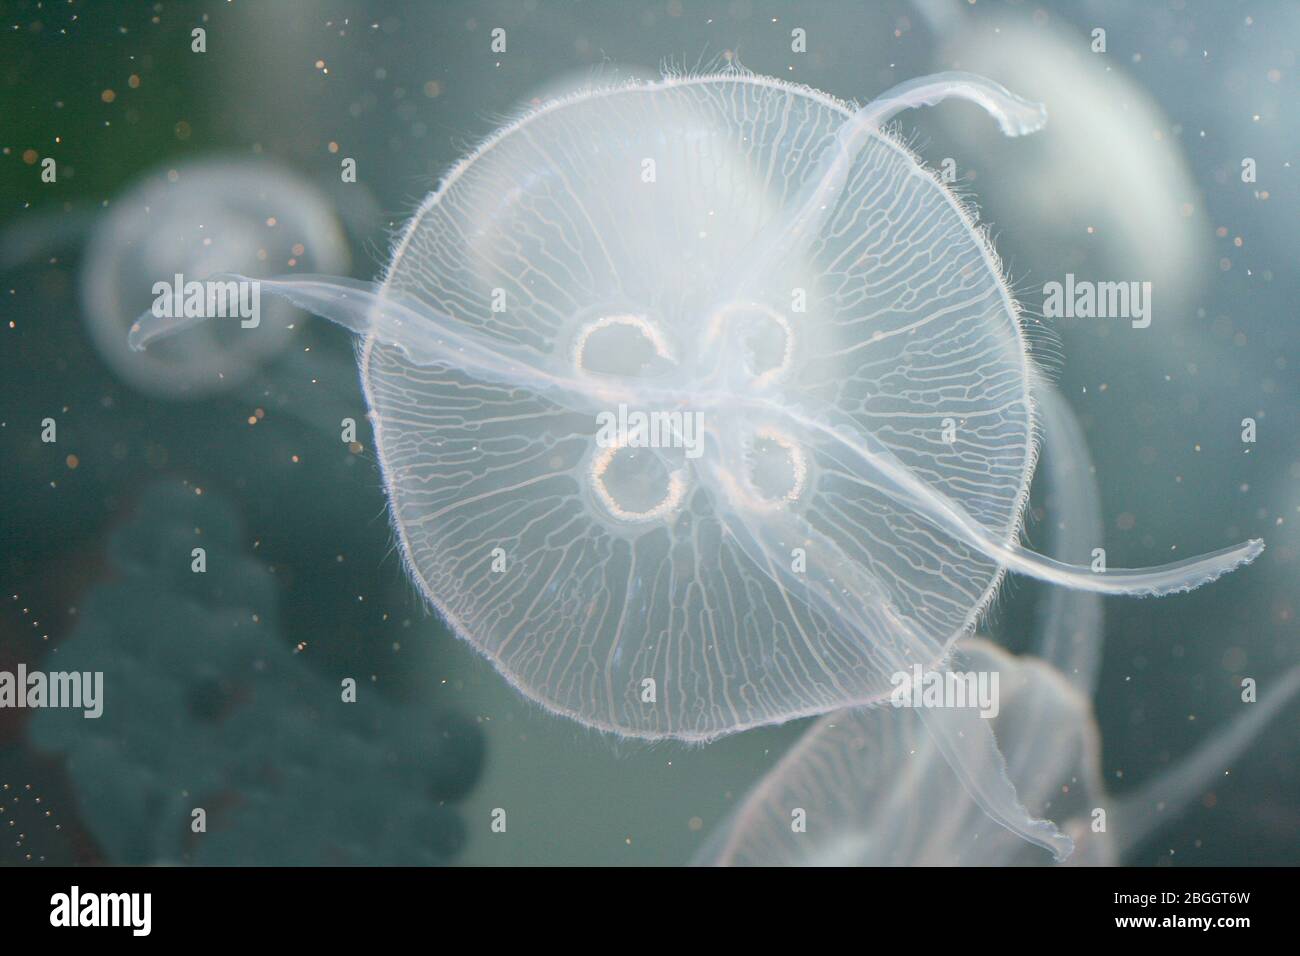 An almost transparent jellyfish floating in the waterEine fast durchsichtige Qualle schwimmt im Wasser Stock Photo